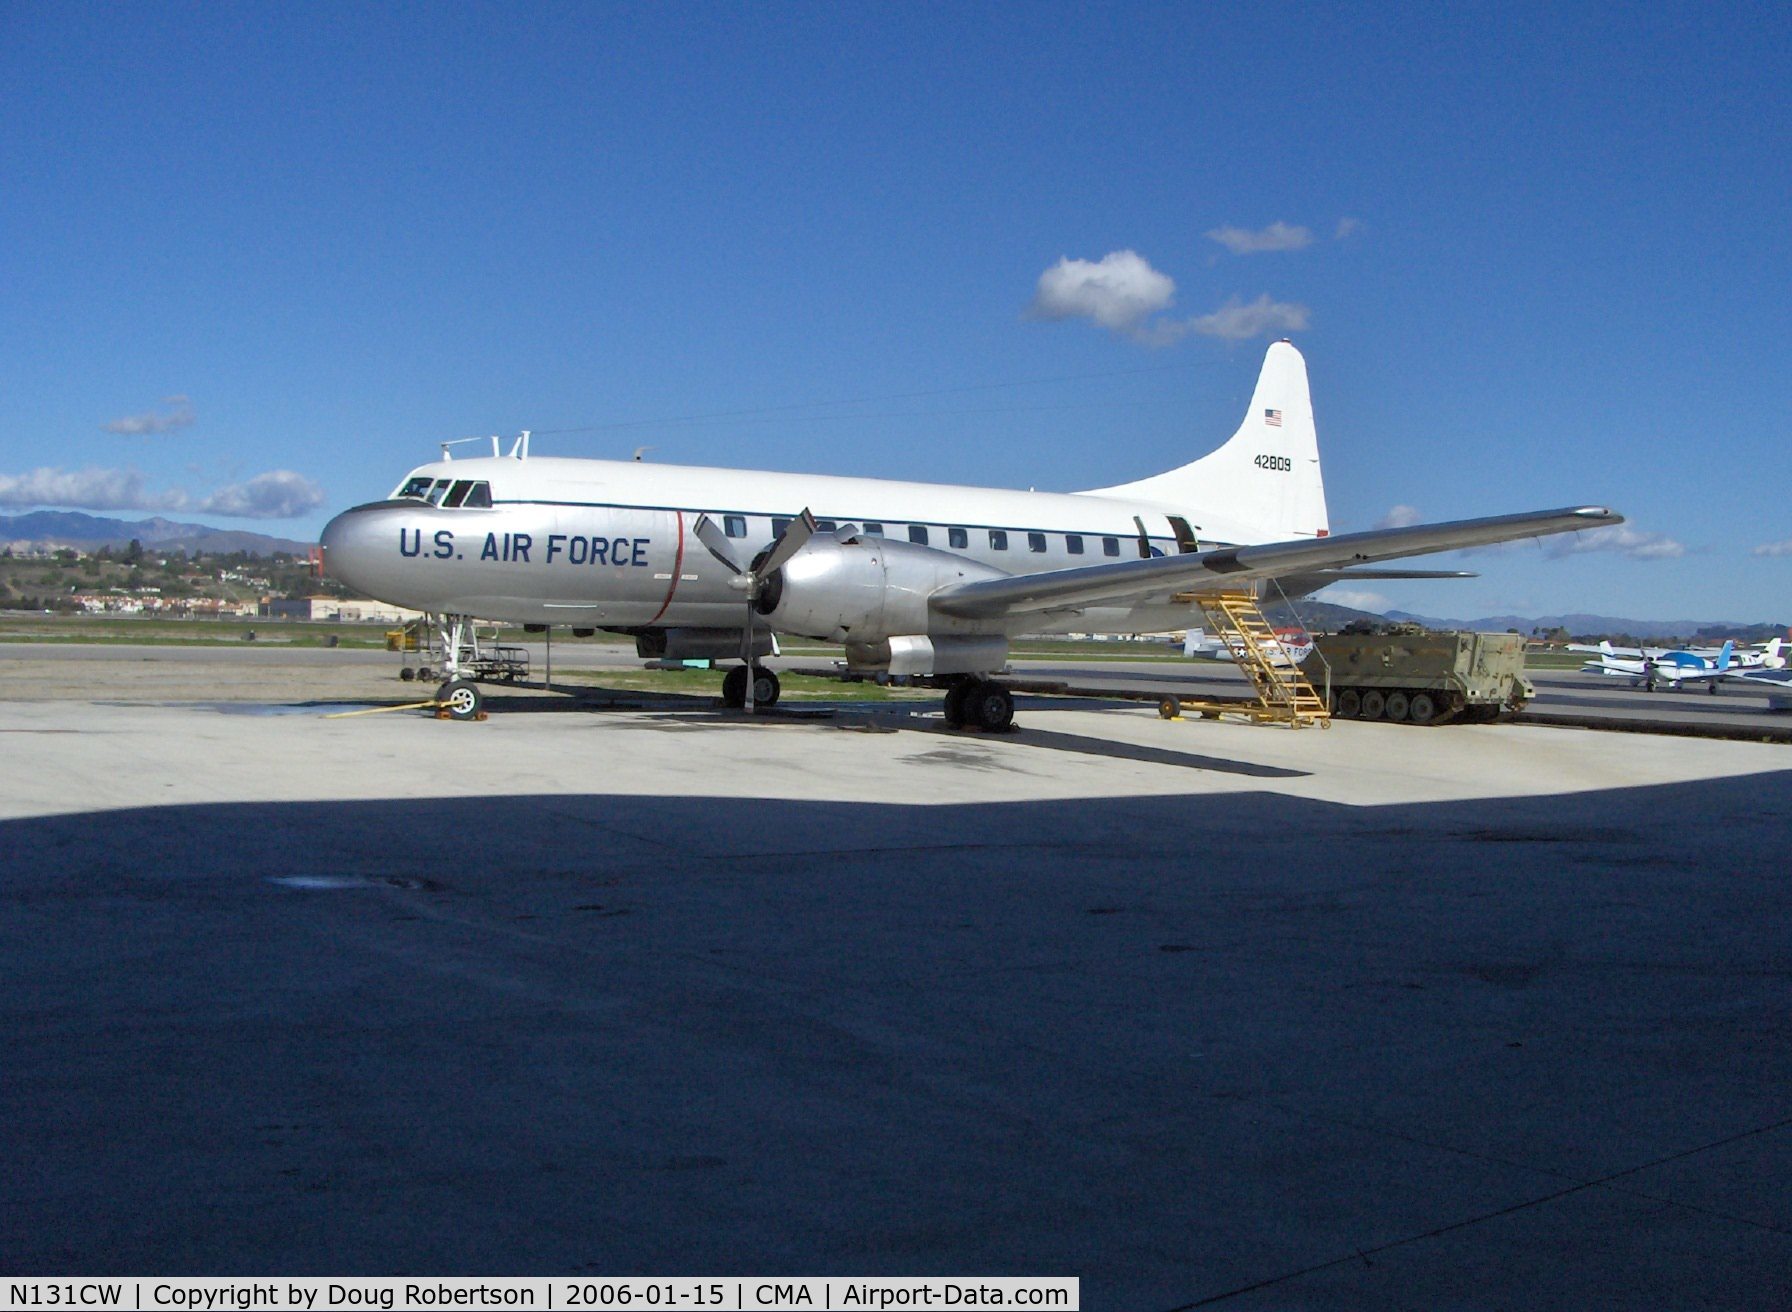 N131CW, 1954 Convair C-131D Samaritan C/N 205, 1954 Convair CV-340-67 as 2004 Convair C-131D 'SAMARITAN', 2 2,500 Hp P&W R-2800-103W radials, Exp. class